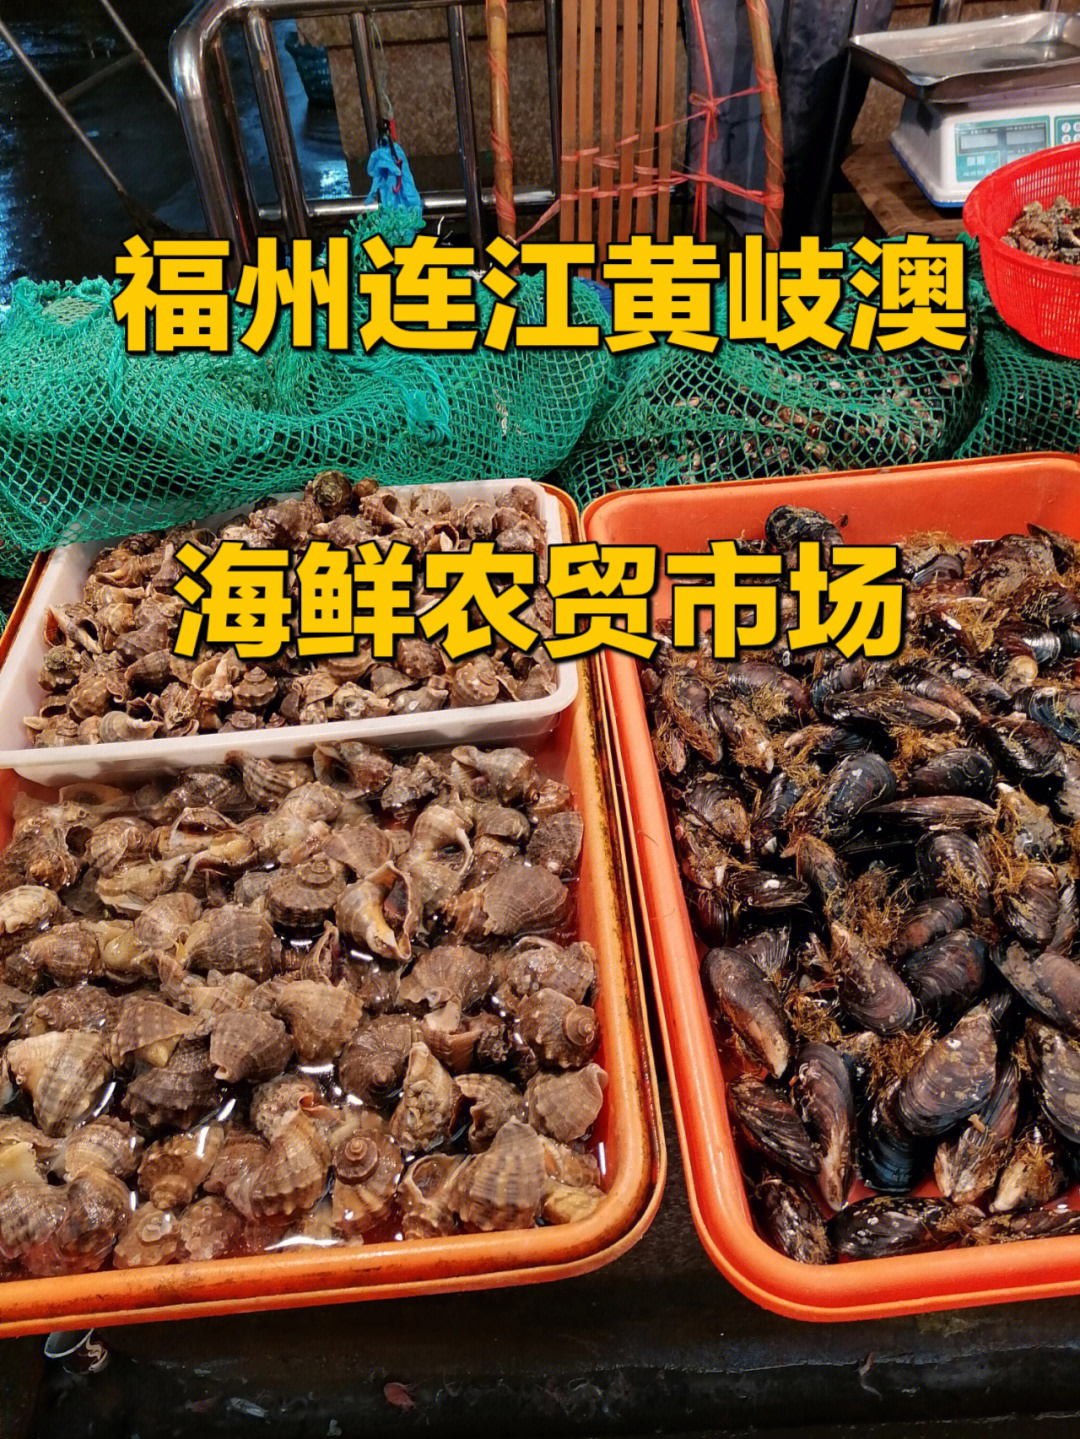 福州连江黄岐澳海鲜农贸市场可以冲哟60